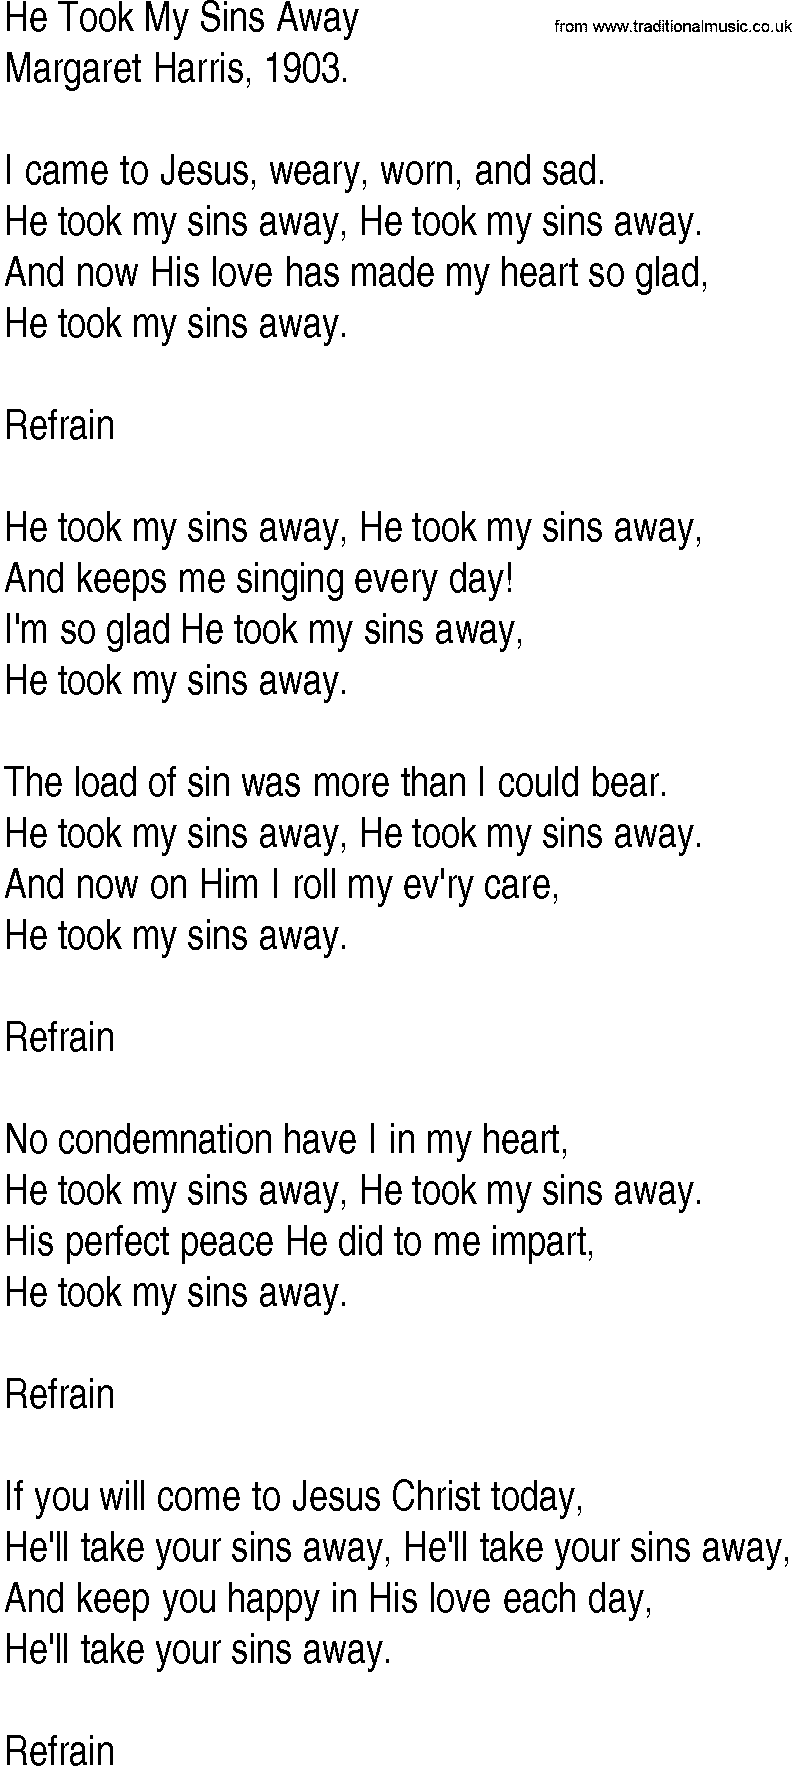 Hymn and Gospel Song: He Took My Sins Away by Margaret Harris lyrics